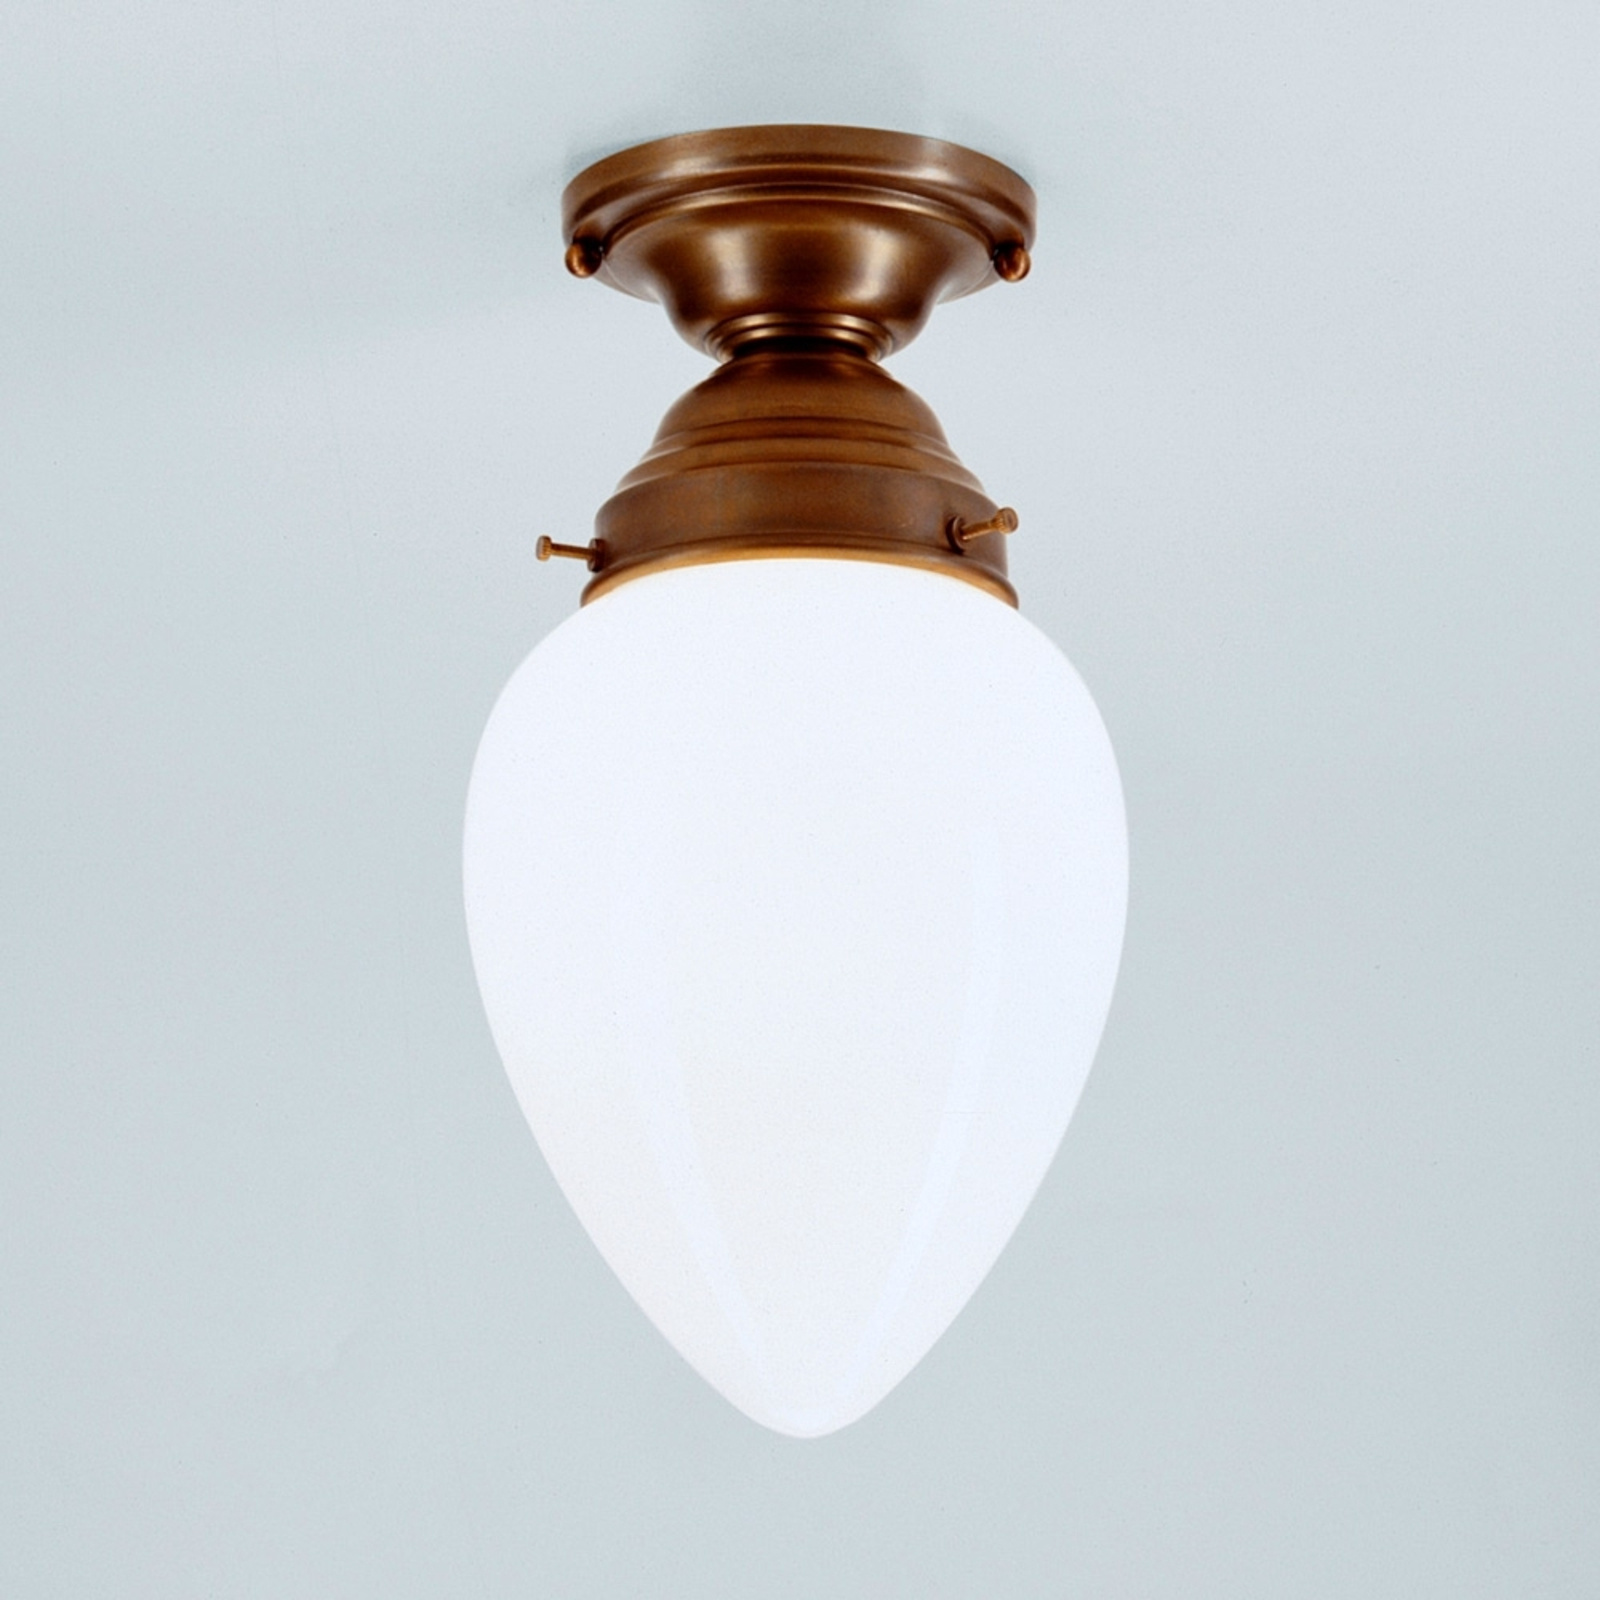 Bill - en loftslampe made in Germany